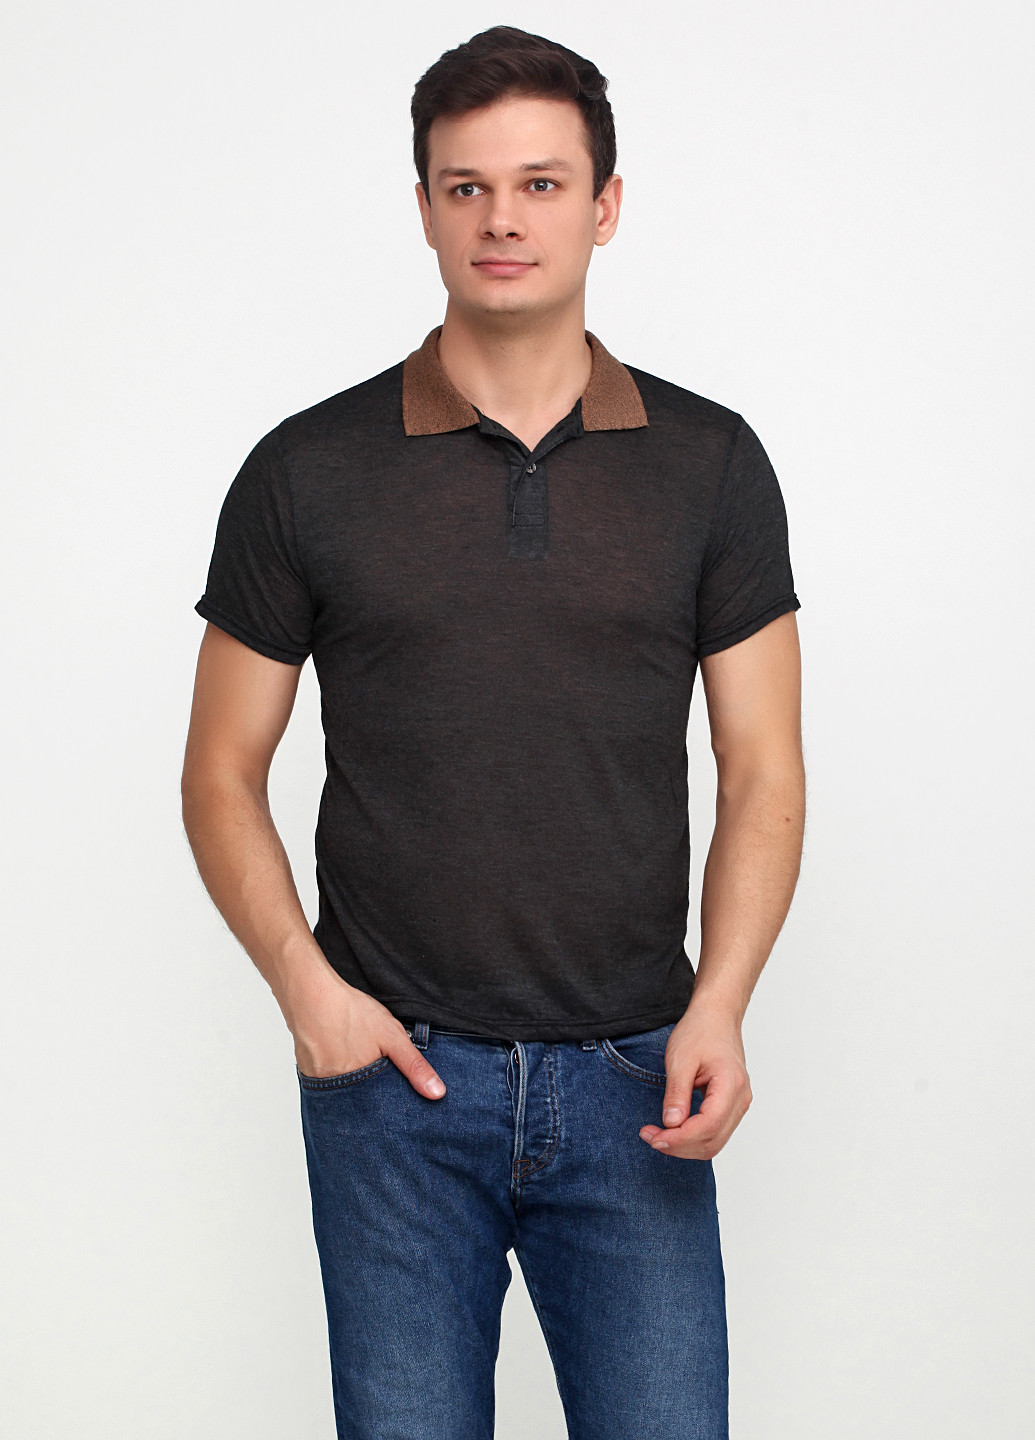 Грифельно-серая футболка-поло для мужчин Chiarotex однотонная